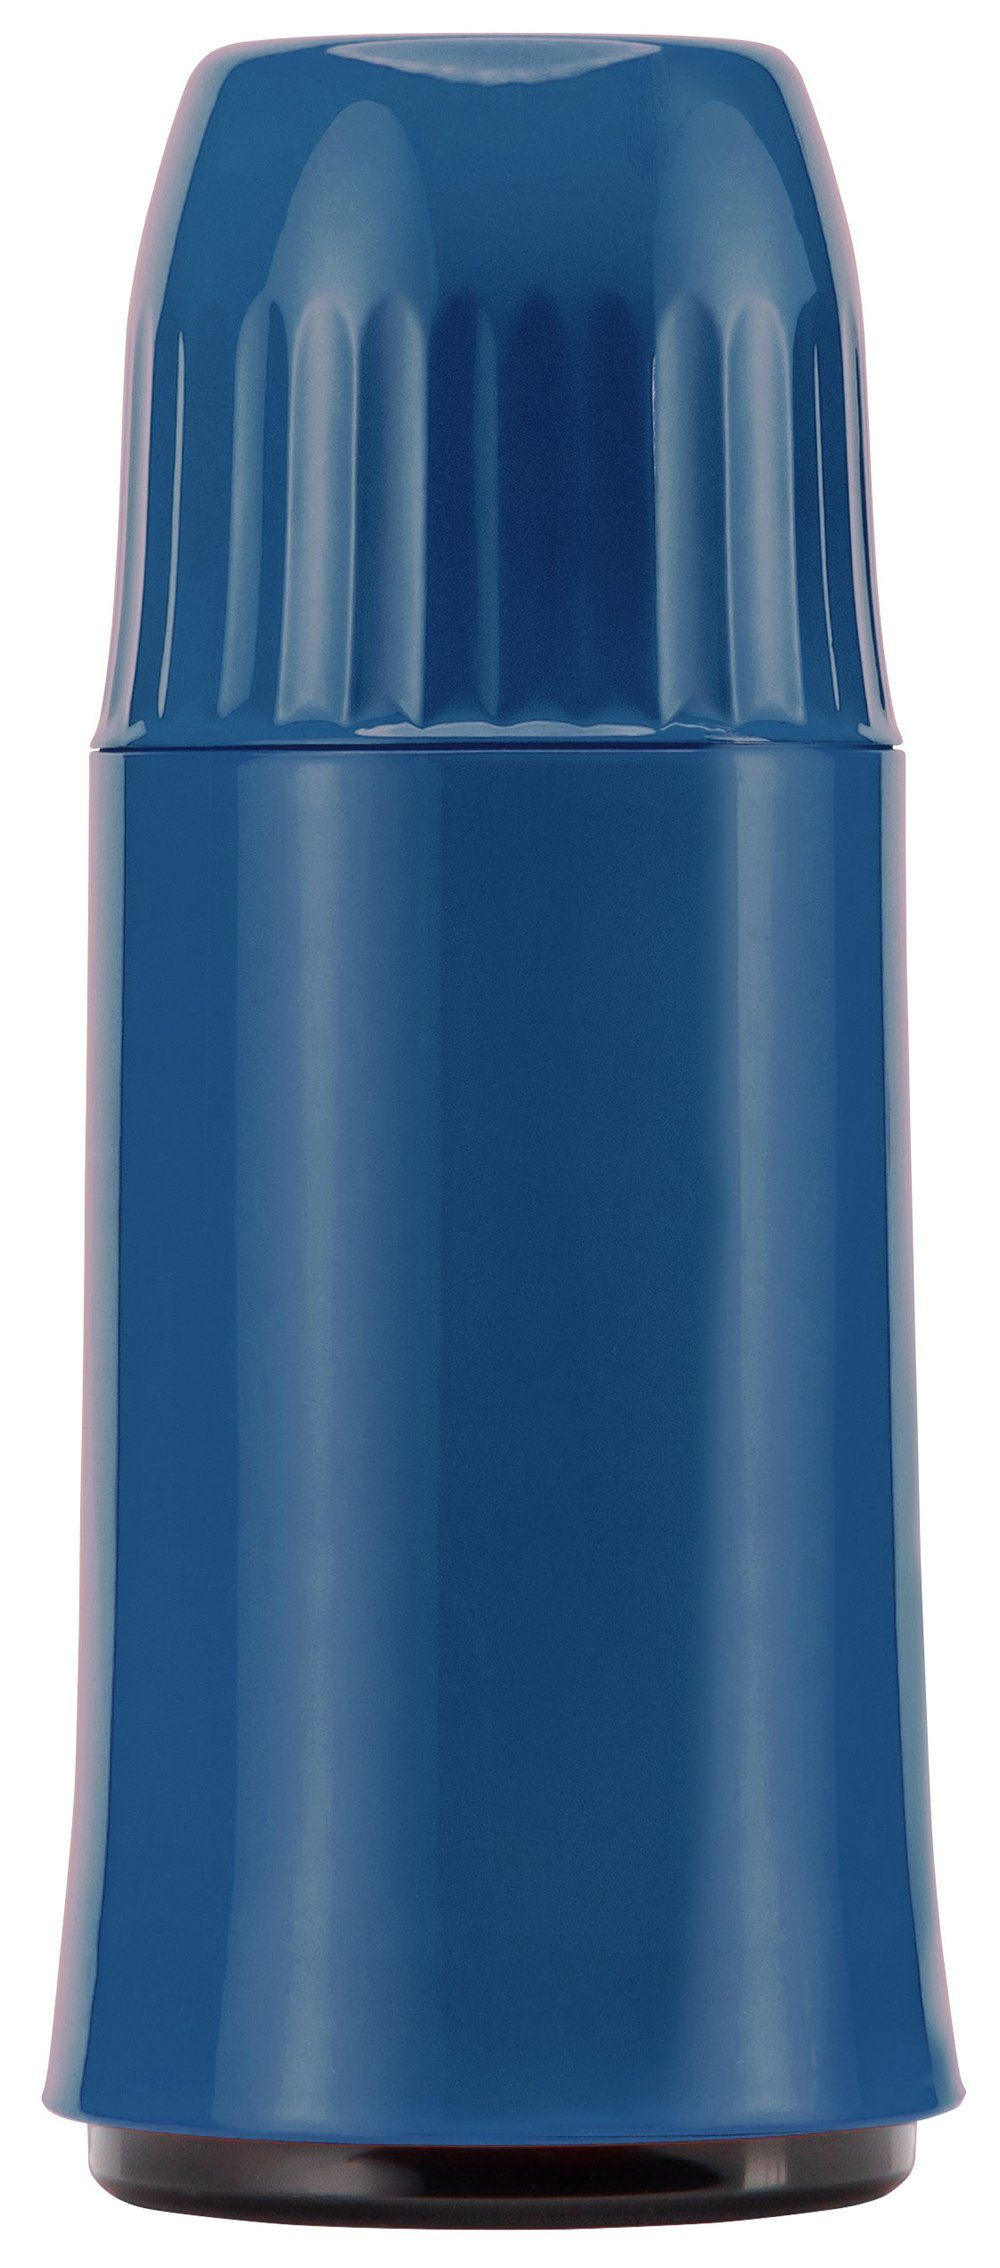 Rocket, taubenblau aus Kunststoff Isolierflasche Helios